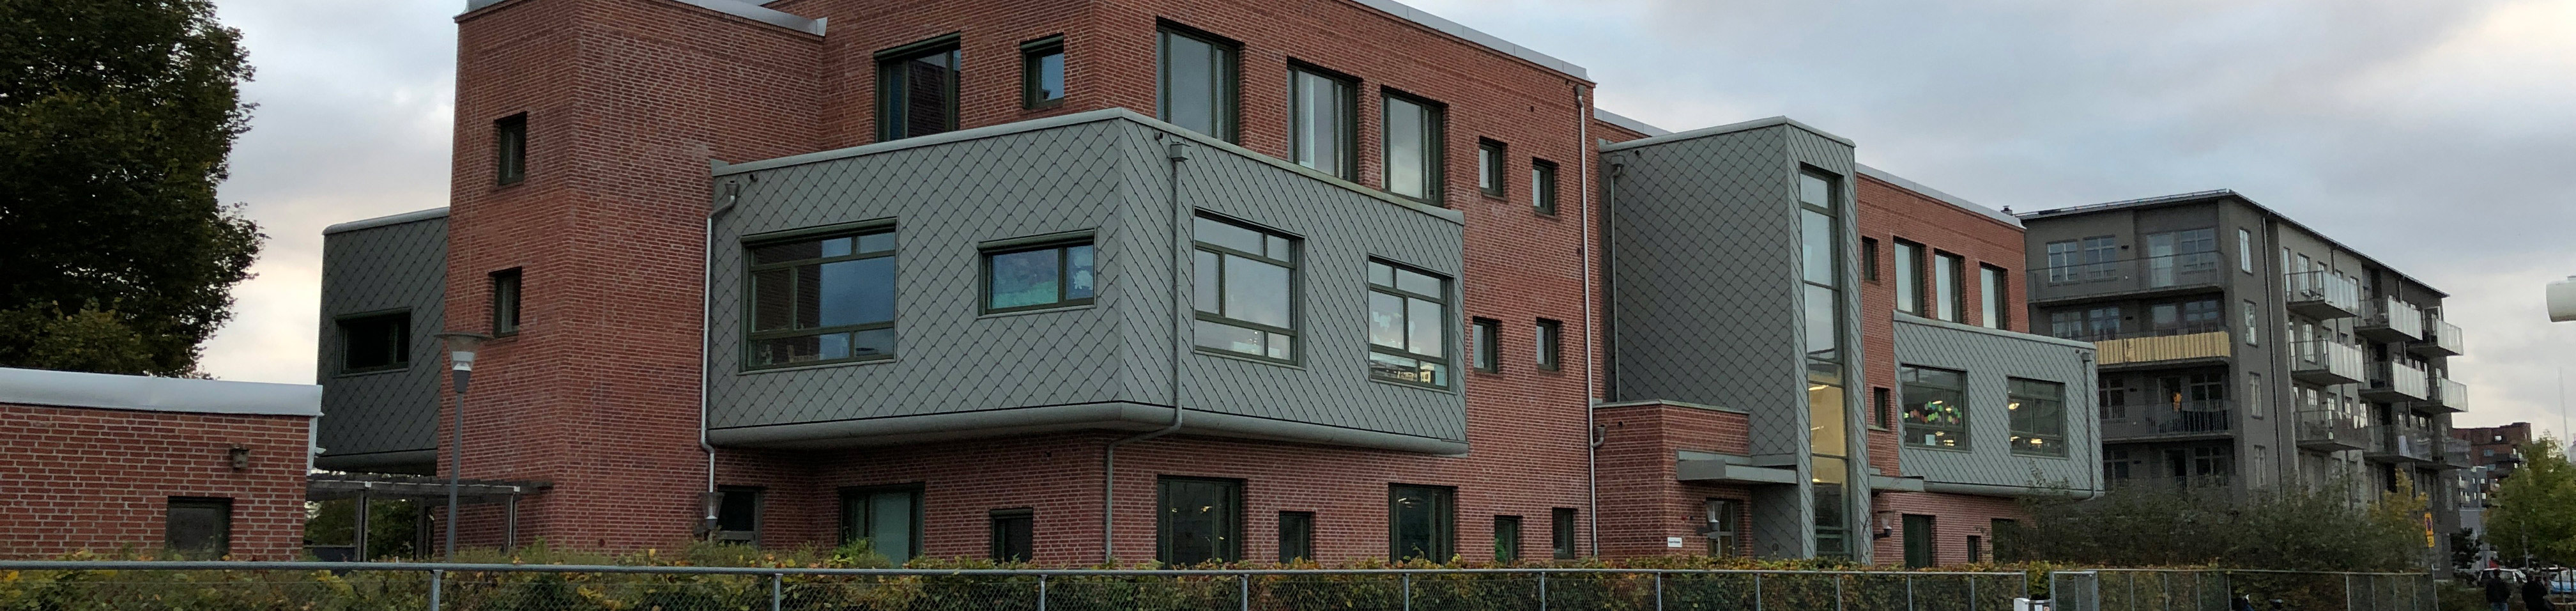 Bojens förskola är byggd i tre plan och har åtta avdelningar.